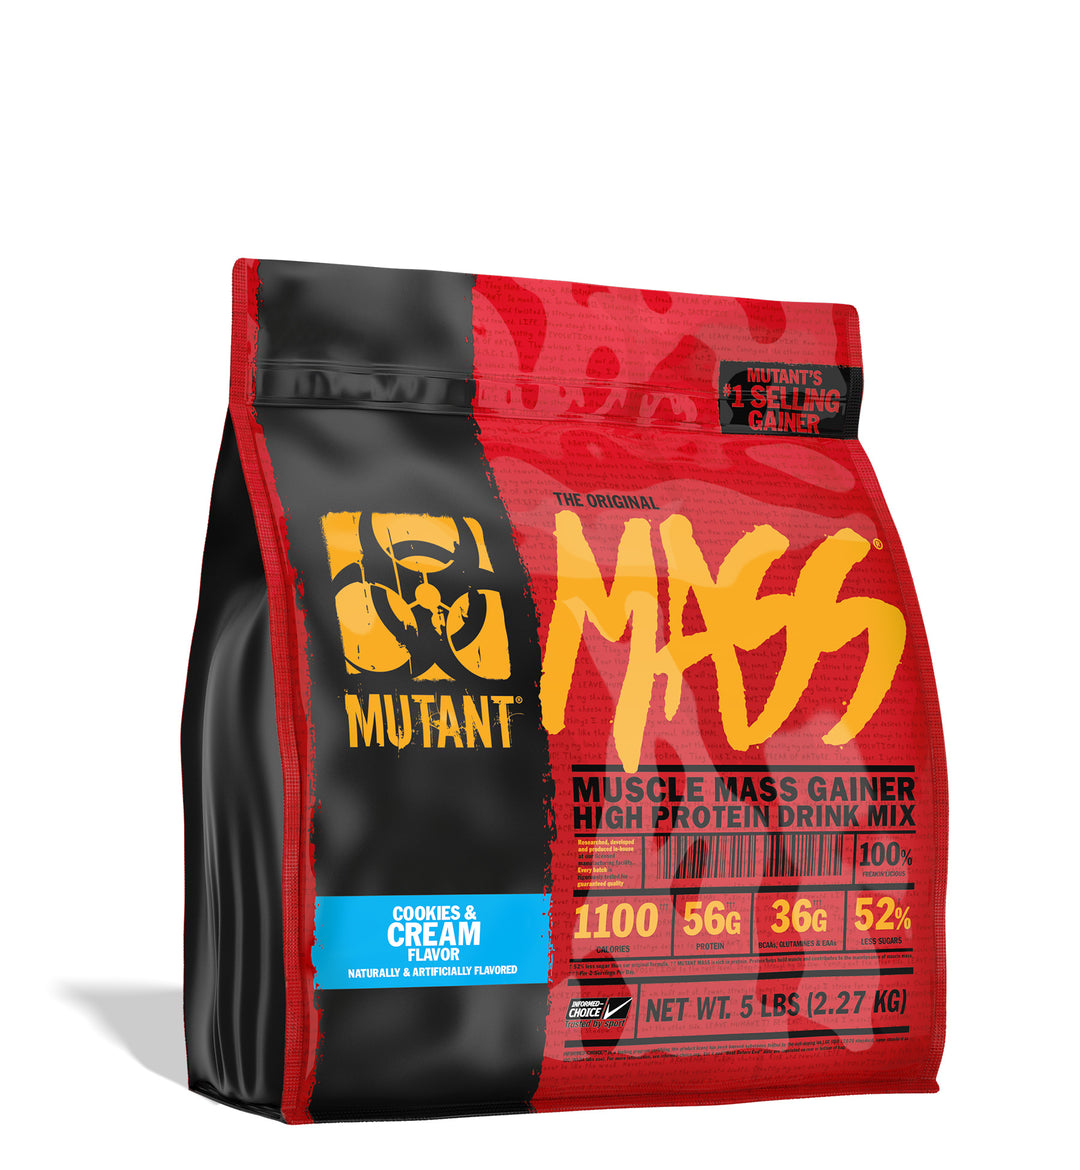 MUTANT MASS® 5 LBS - Muscle Mass Gainer